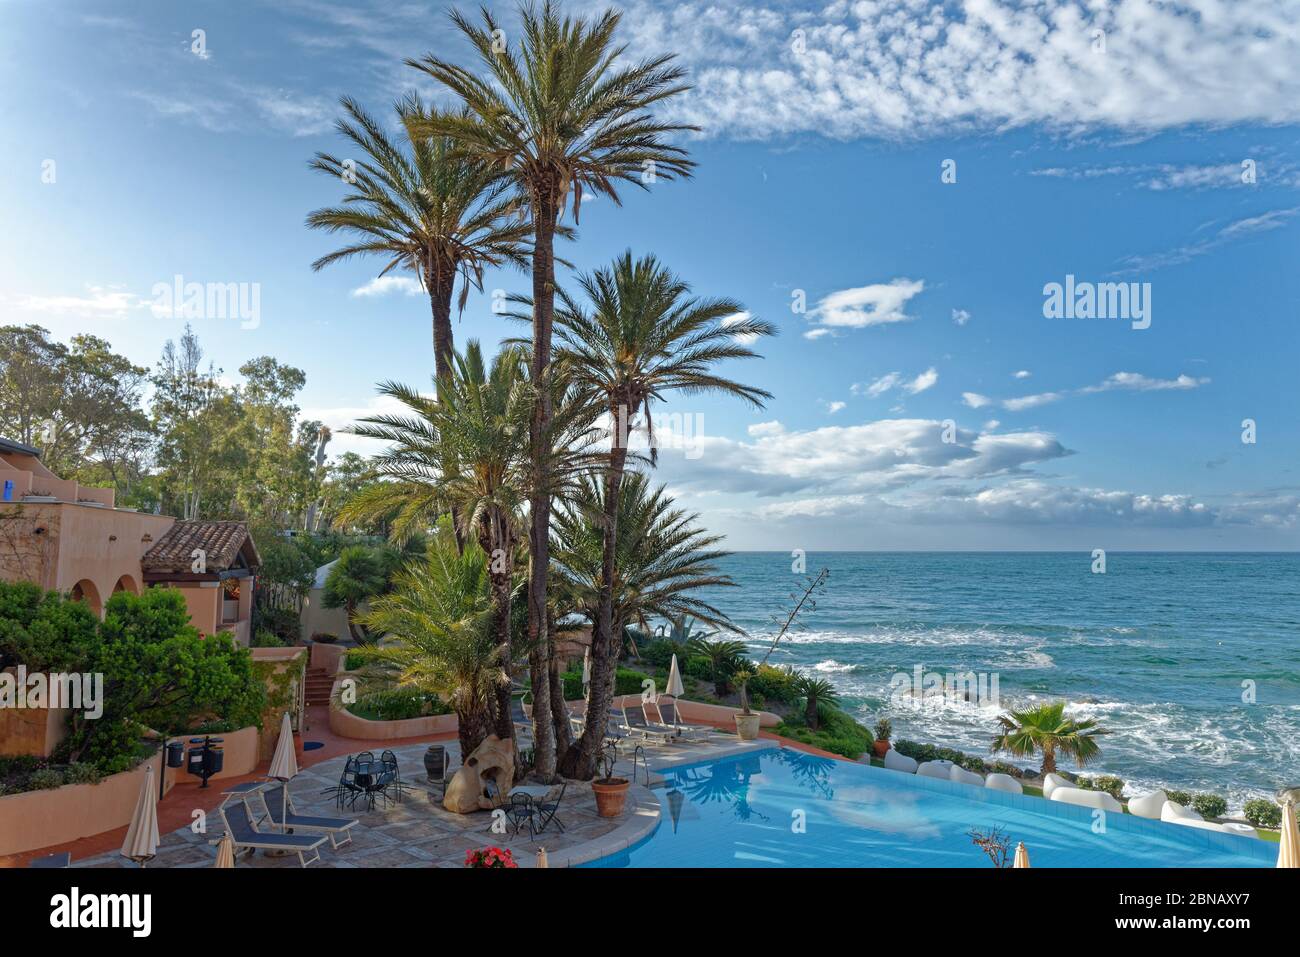 Vista sulla piscina e sul mare Mediterraneo in una giornata di sole - Vacanze, destinazione di viaggio - Arbatax, Sardegna, Italia - 18 maggio 2019 Foto Stock